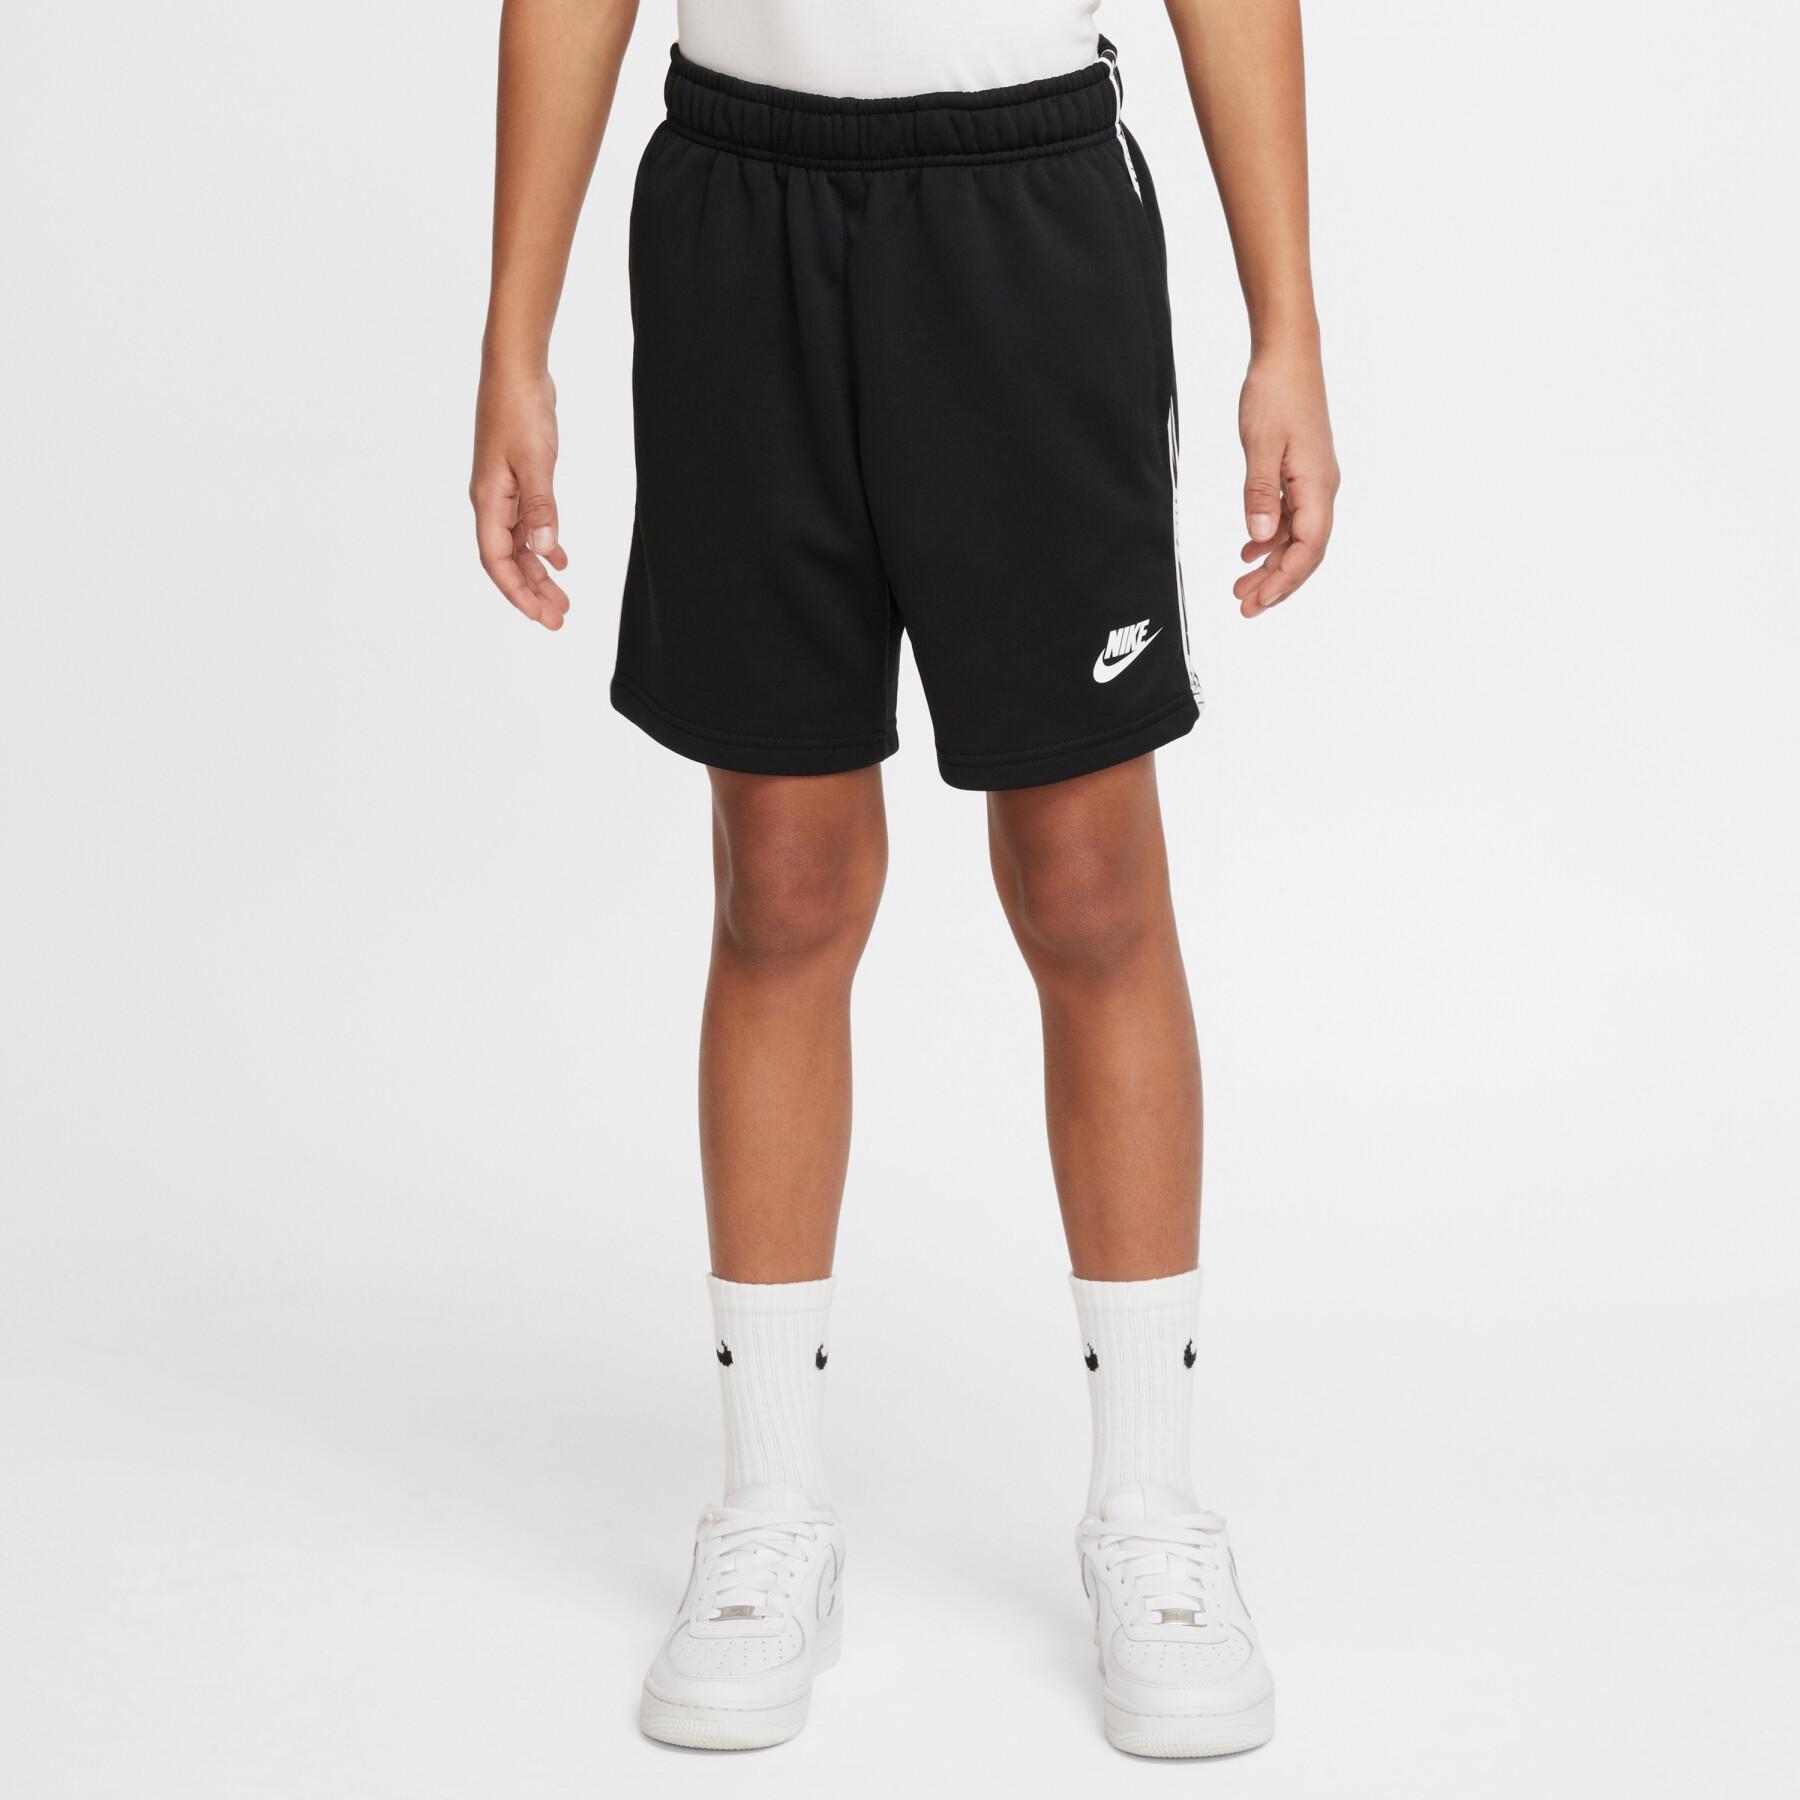 Shorts für Kinder Nike